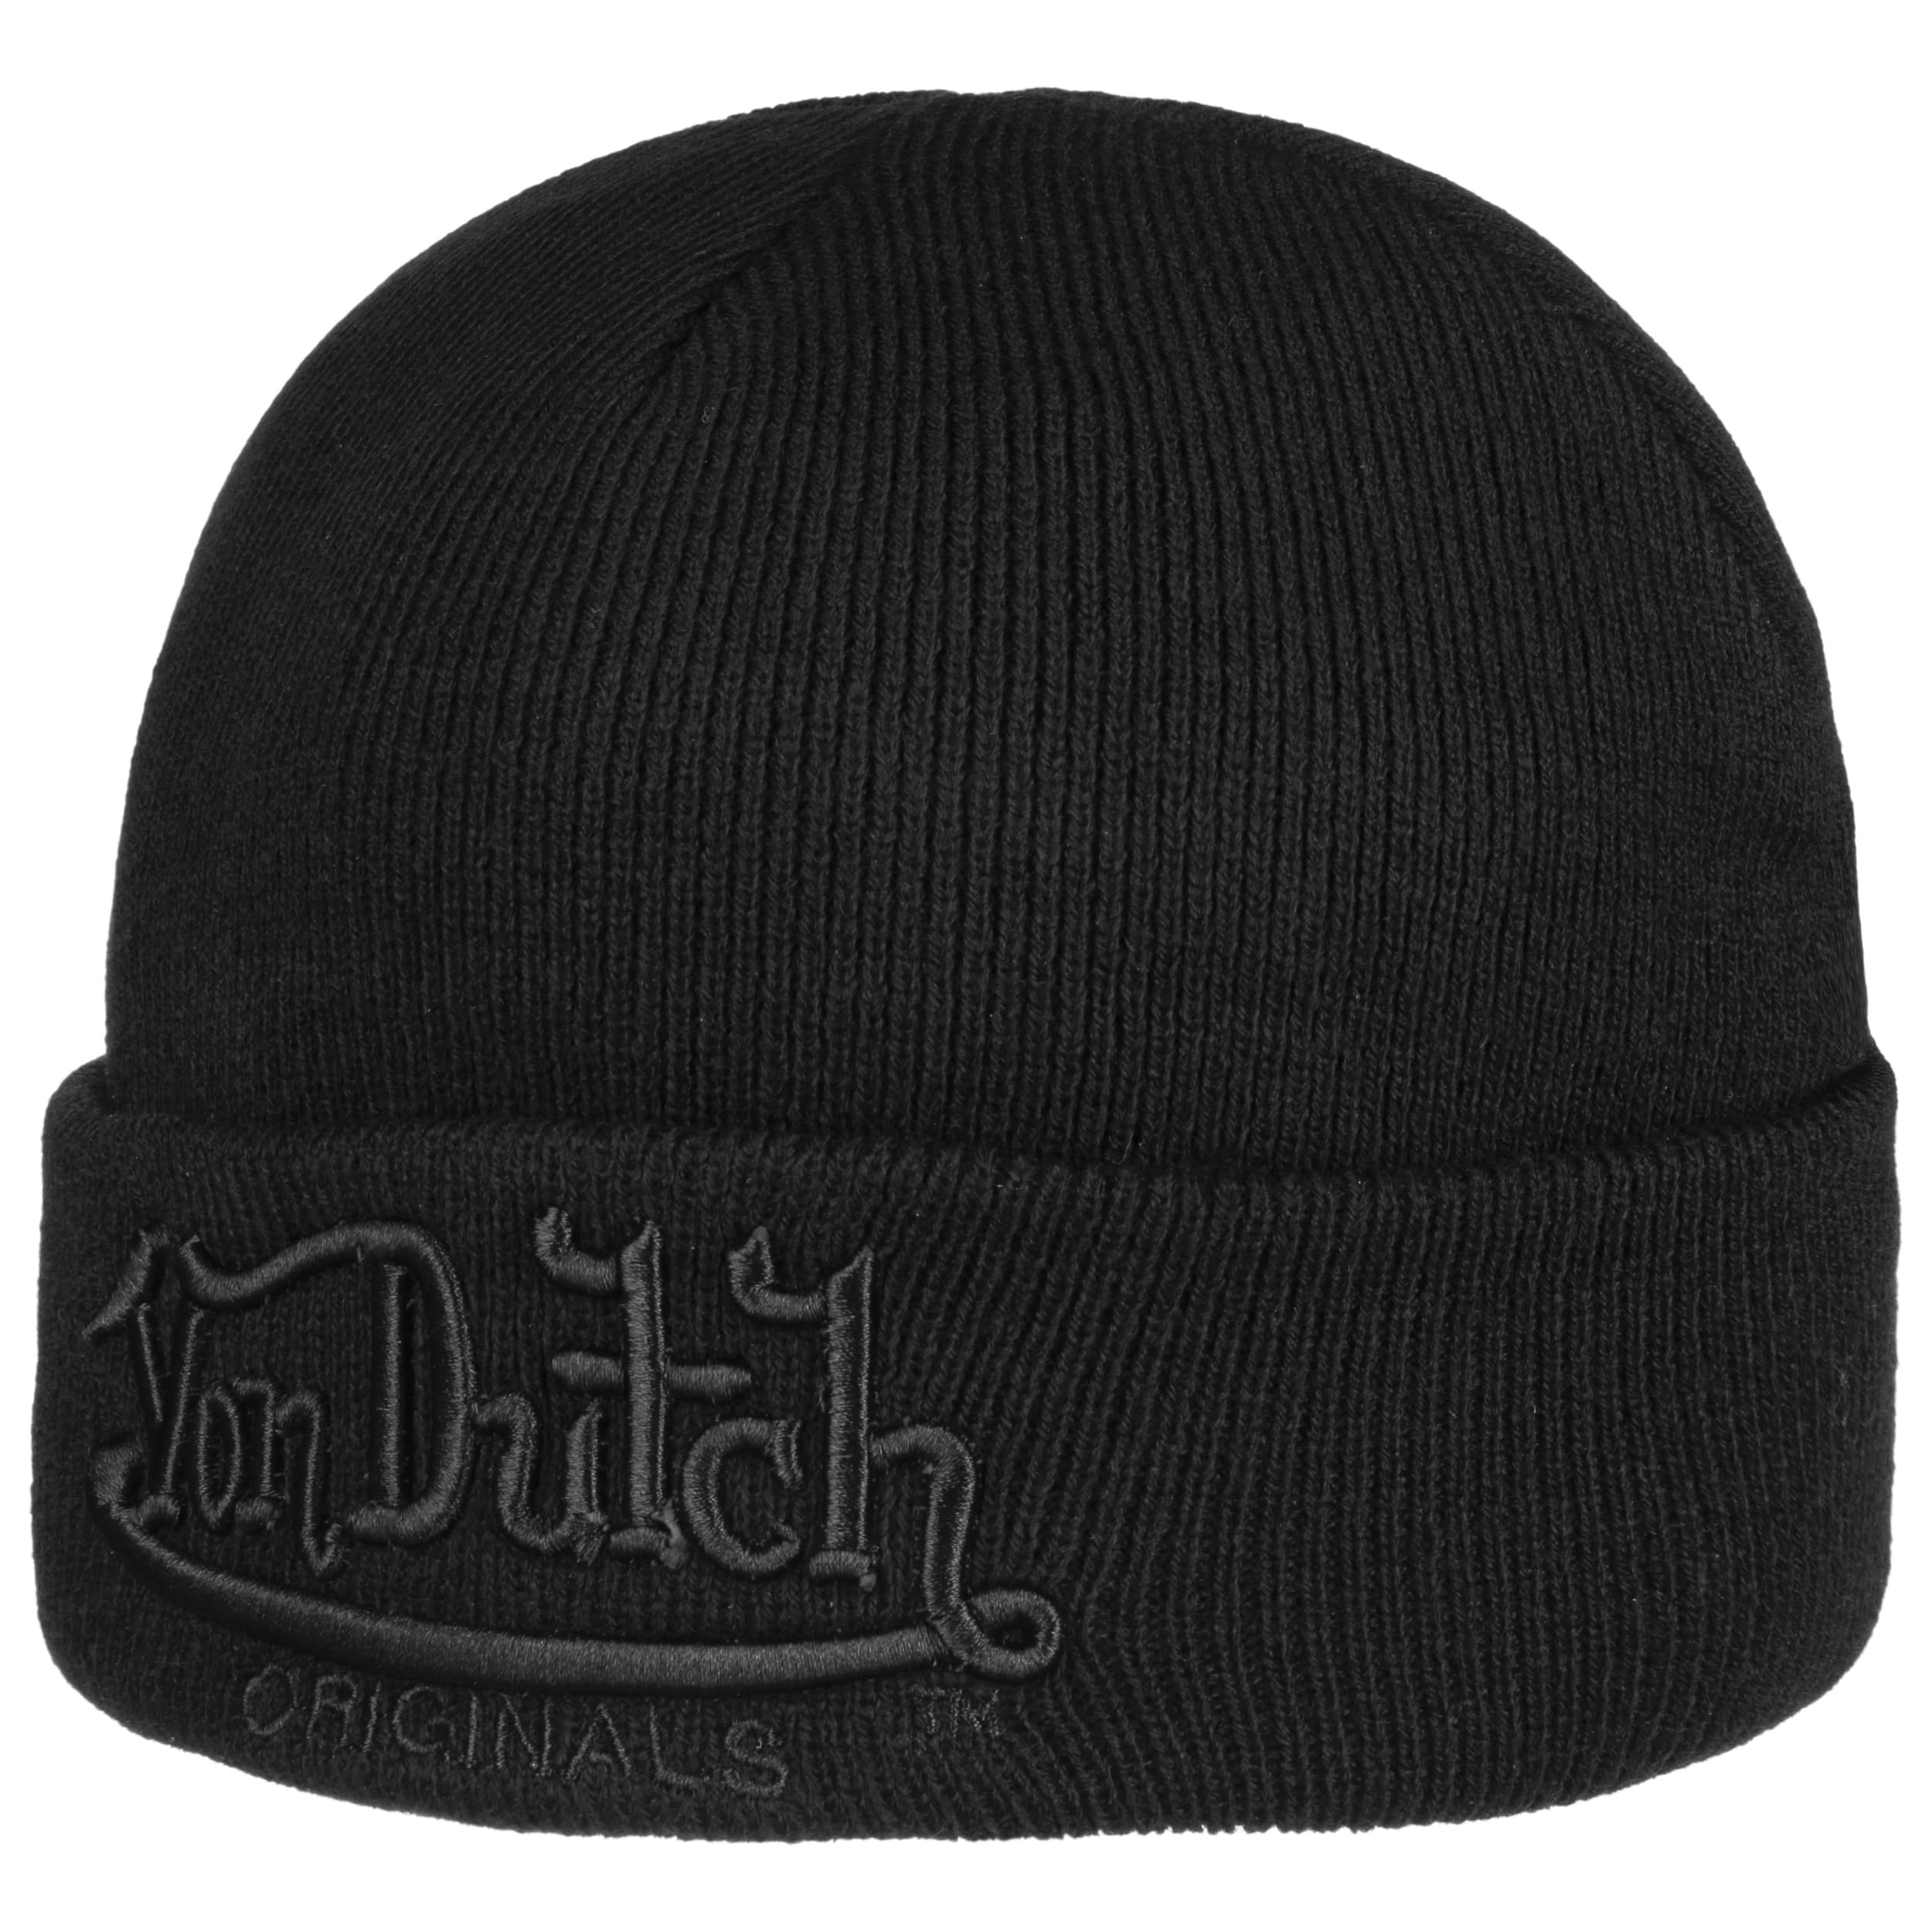 Von Dutch ビーニー 定番 - 帽子